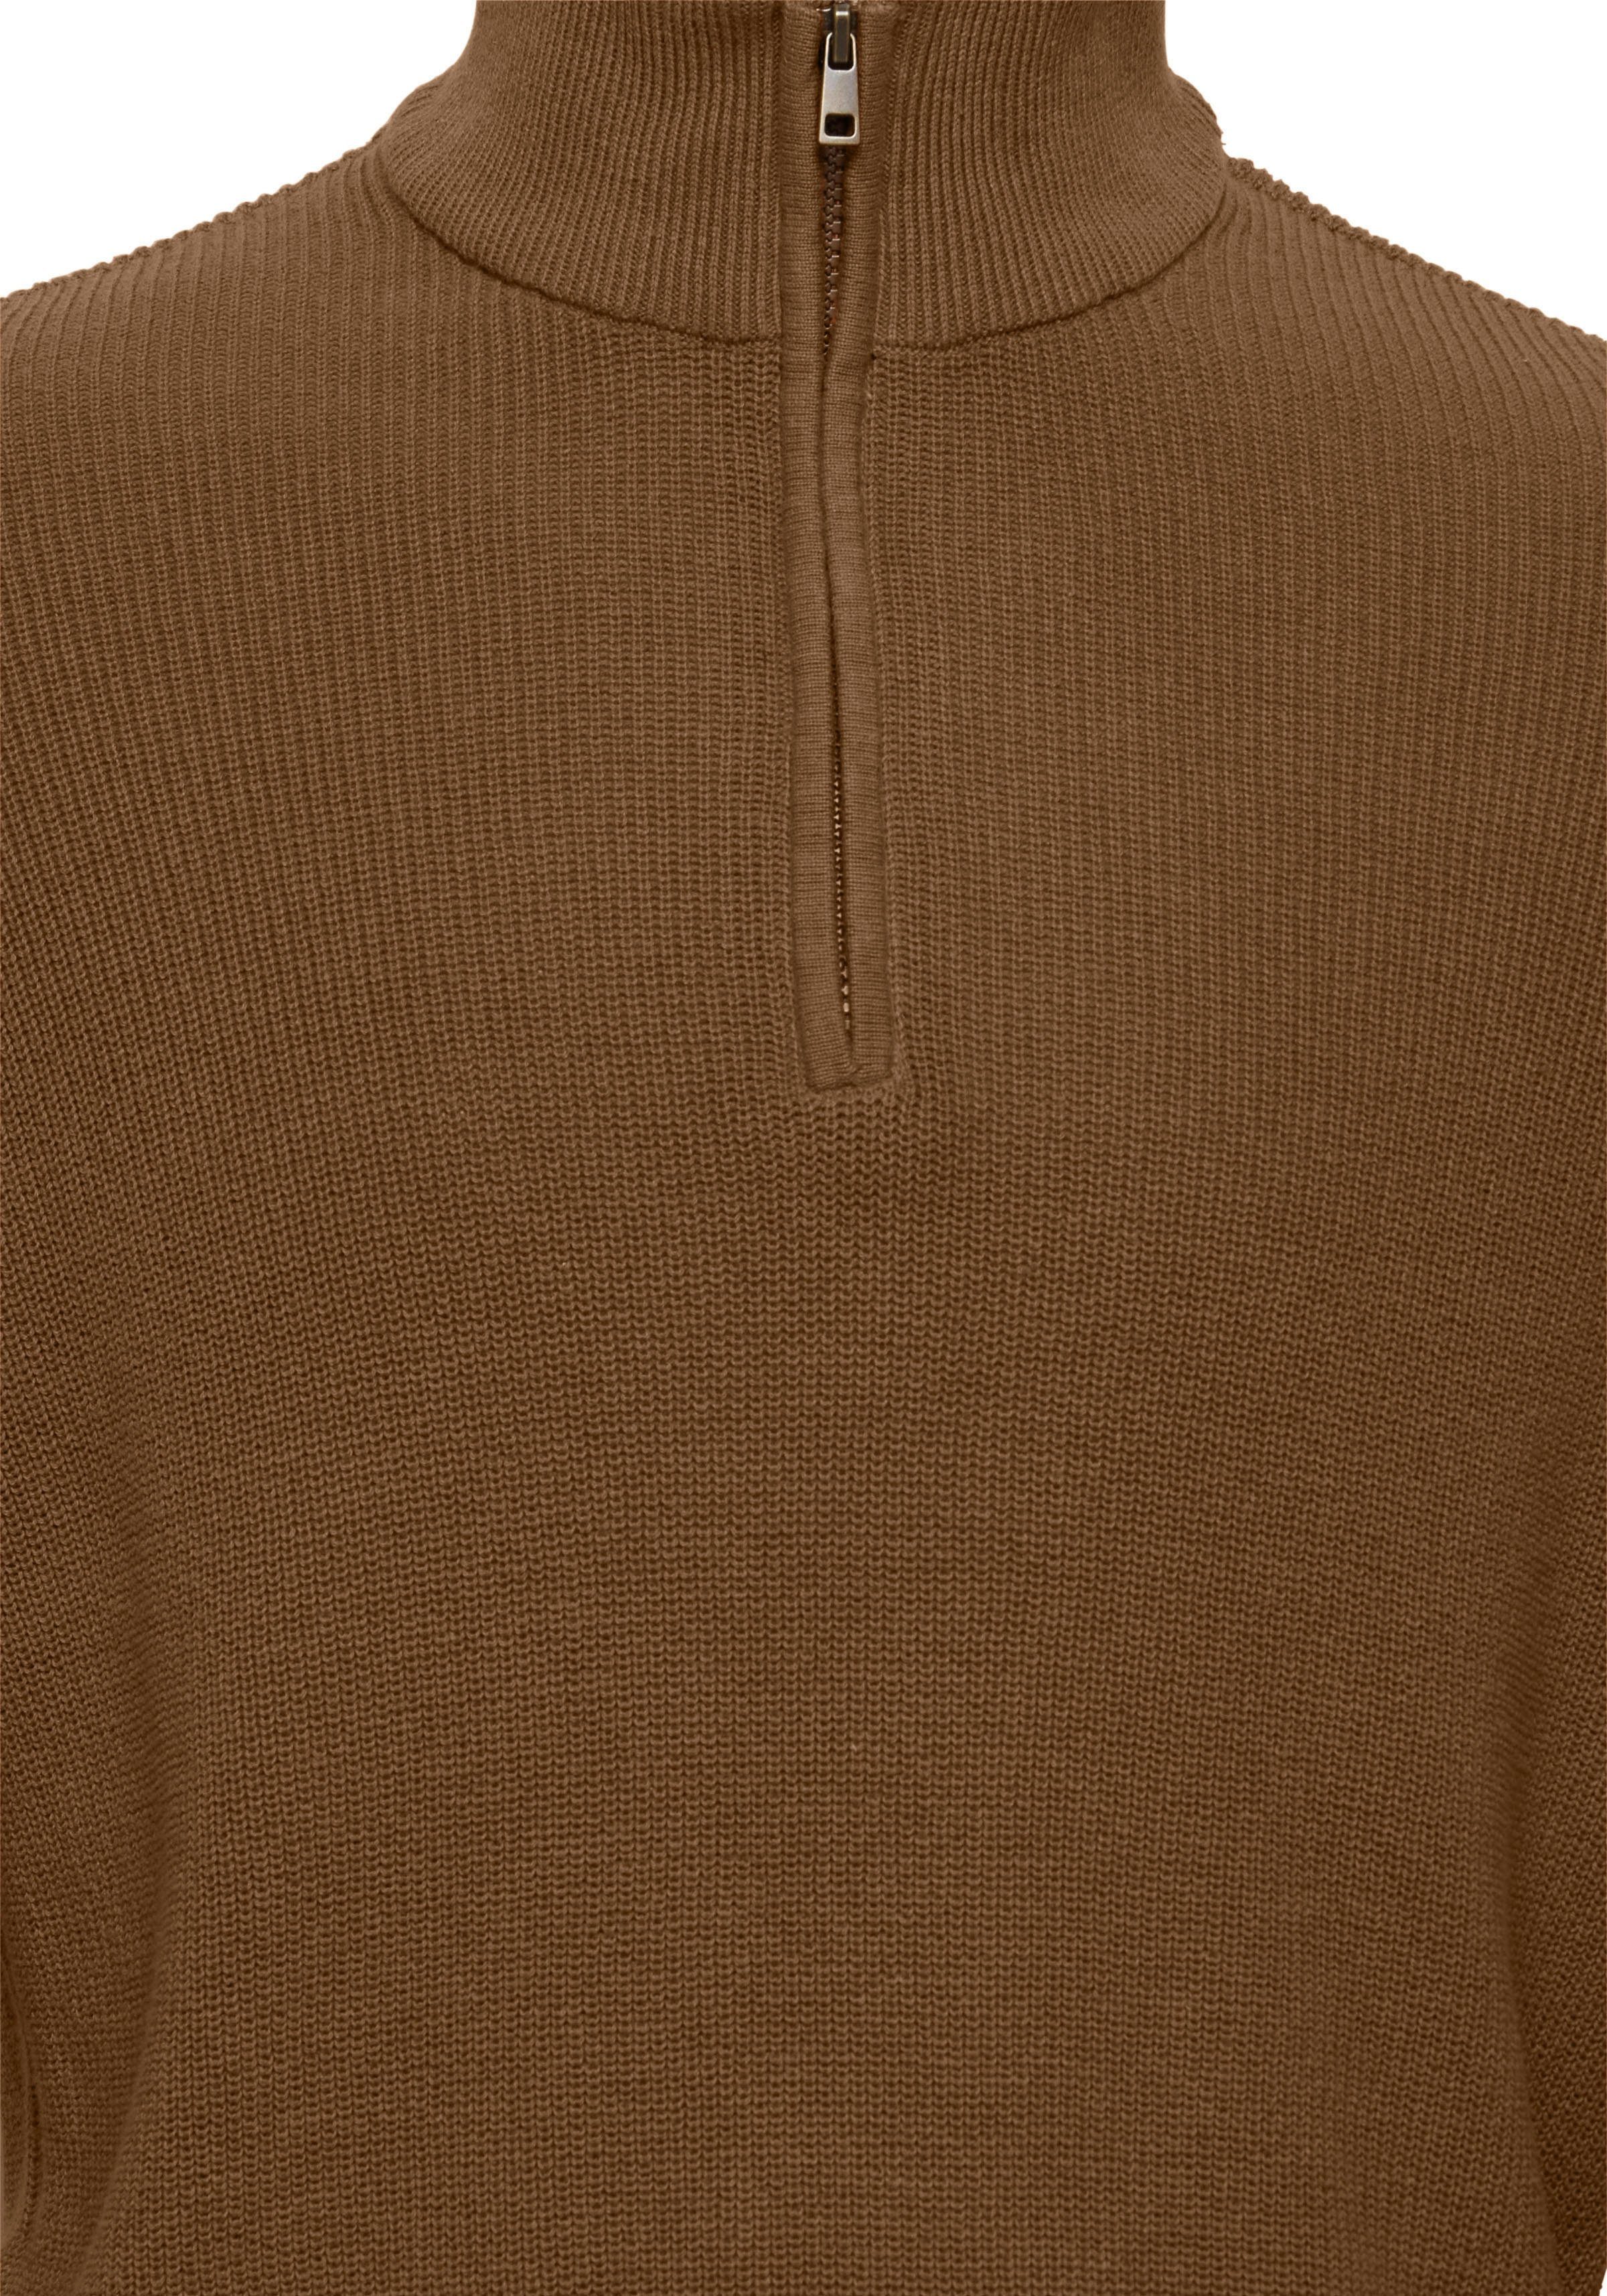 half-zipp BL BHCodford Pullover Blend Brown Stehkragenpullover